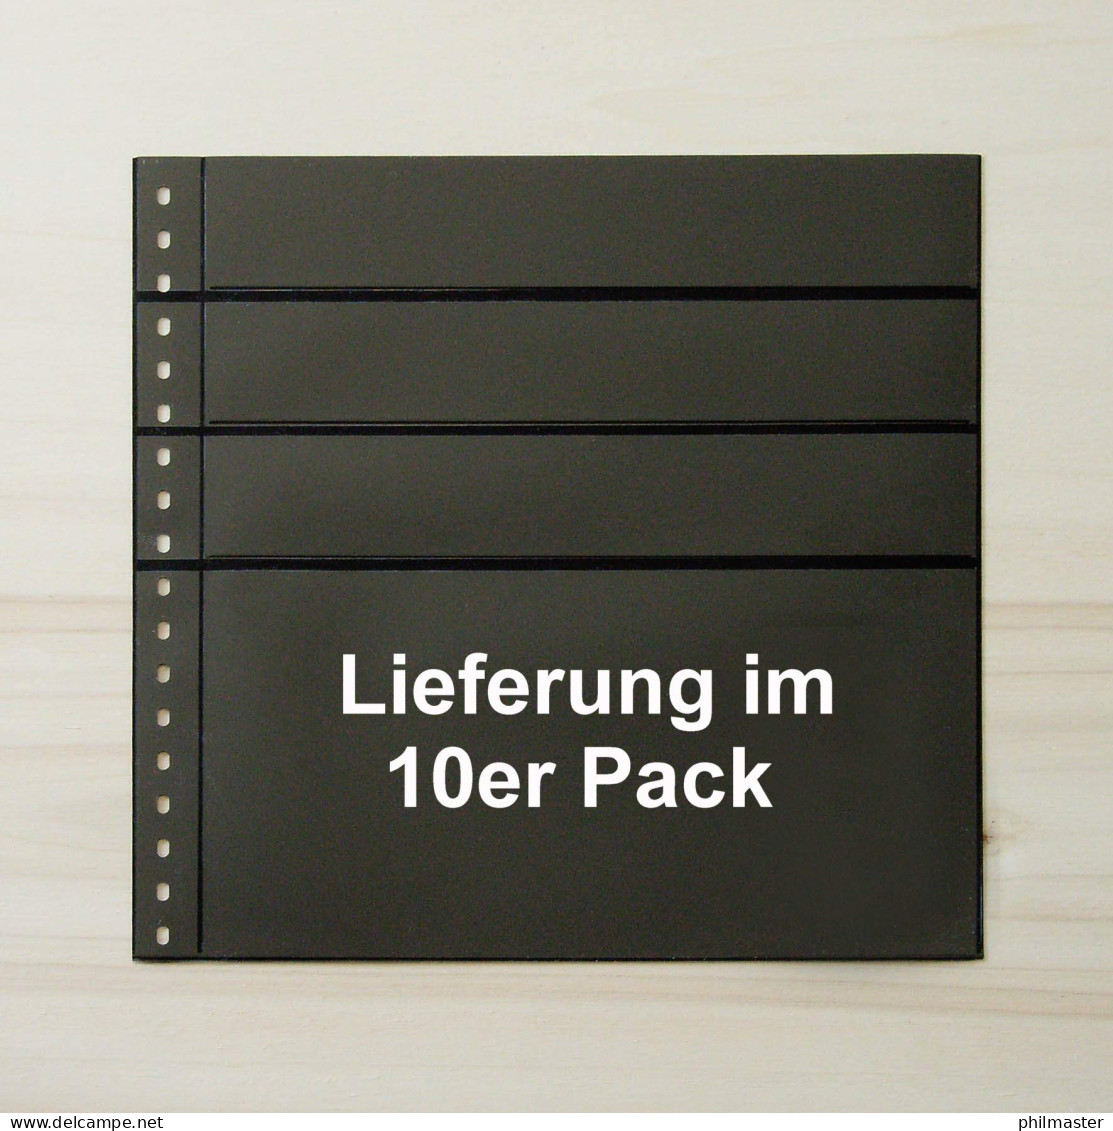 LINDNER Omnia Einsteckblatt 081 - Schwarz 3x 43 + 1x 141 Mm - 10er-Packung - Vierges